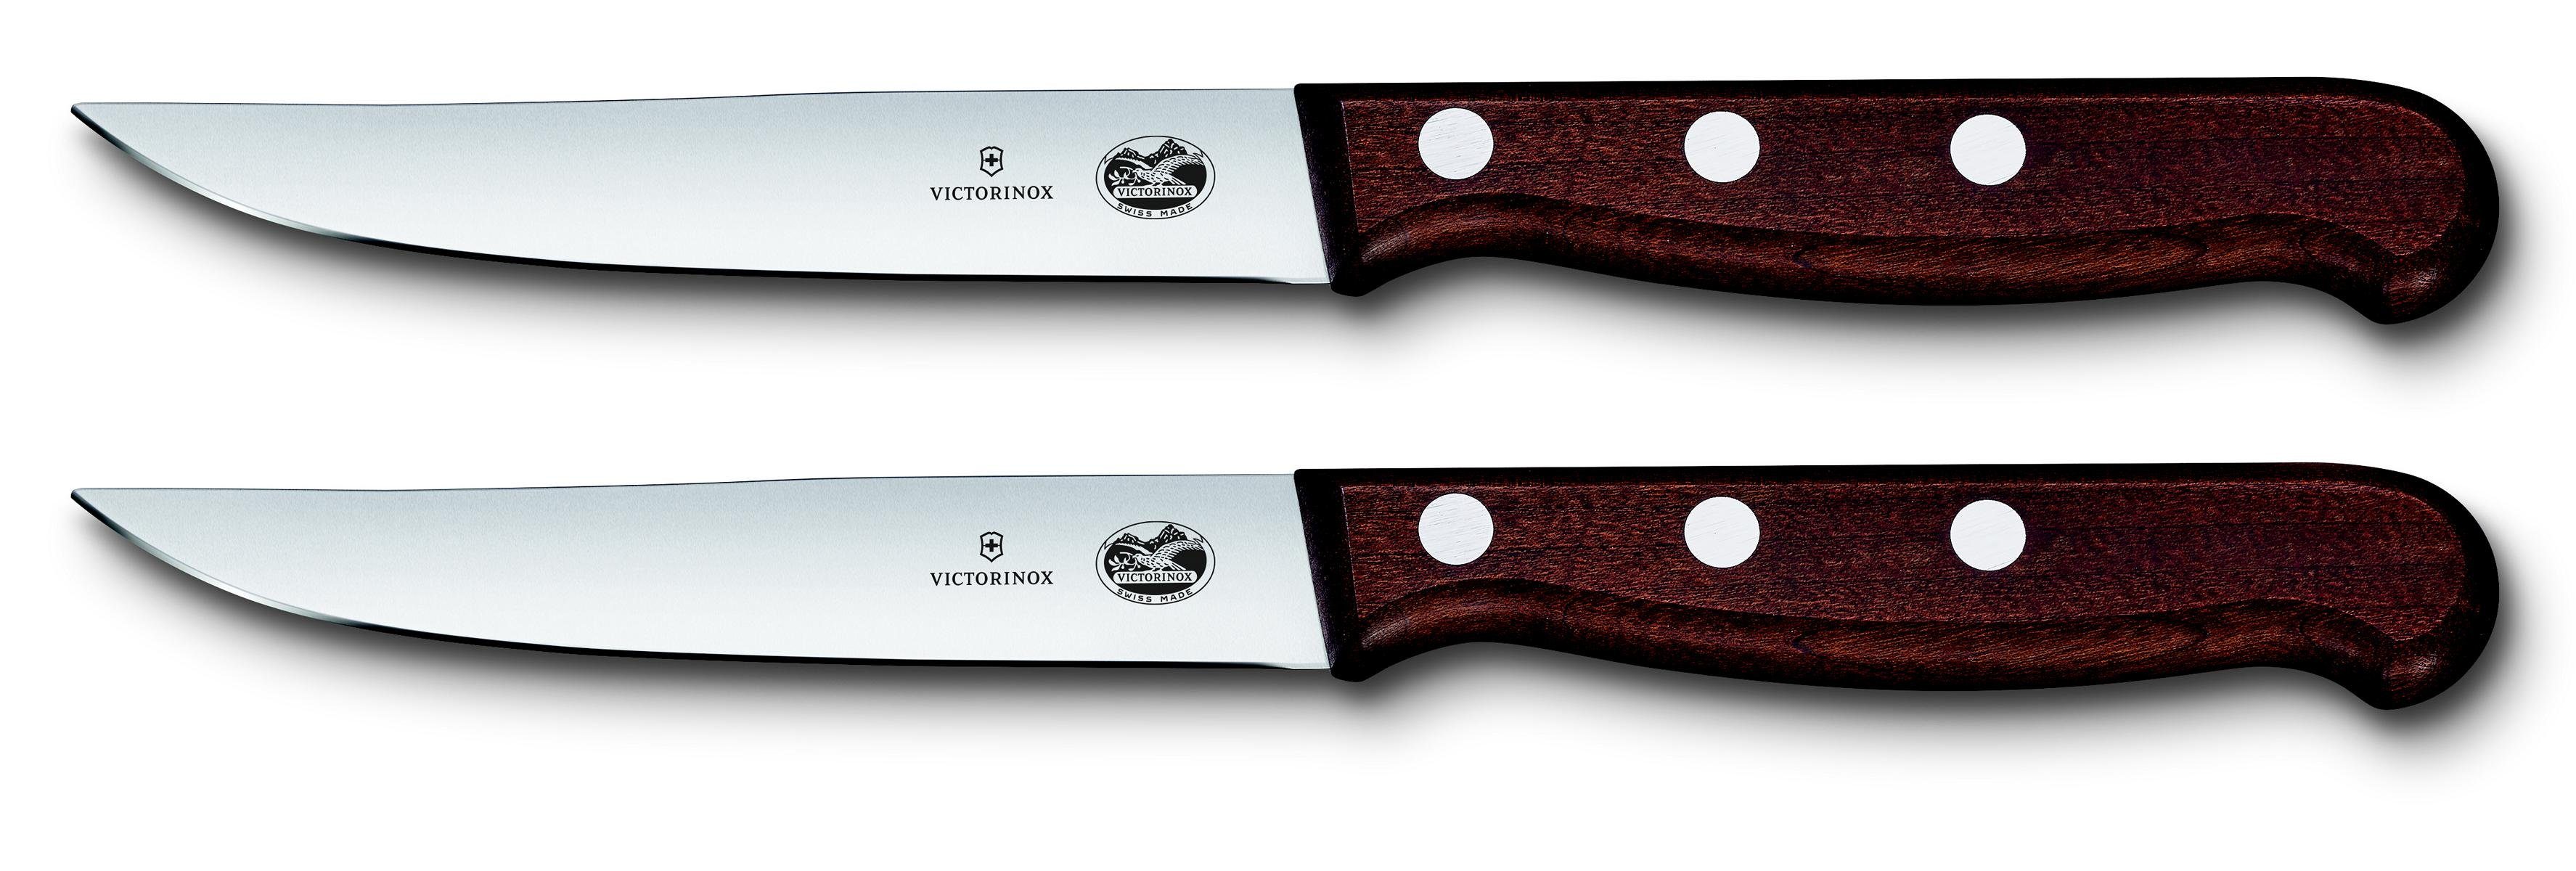 ger mod Taschenmesser Ahornholz, Steakmesser-Set, Victorinox Schliff,12 cm,2-teilig,Gesch.